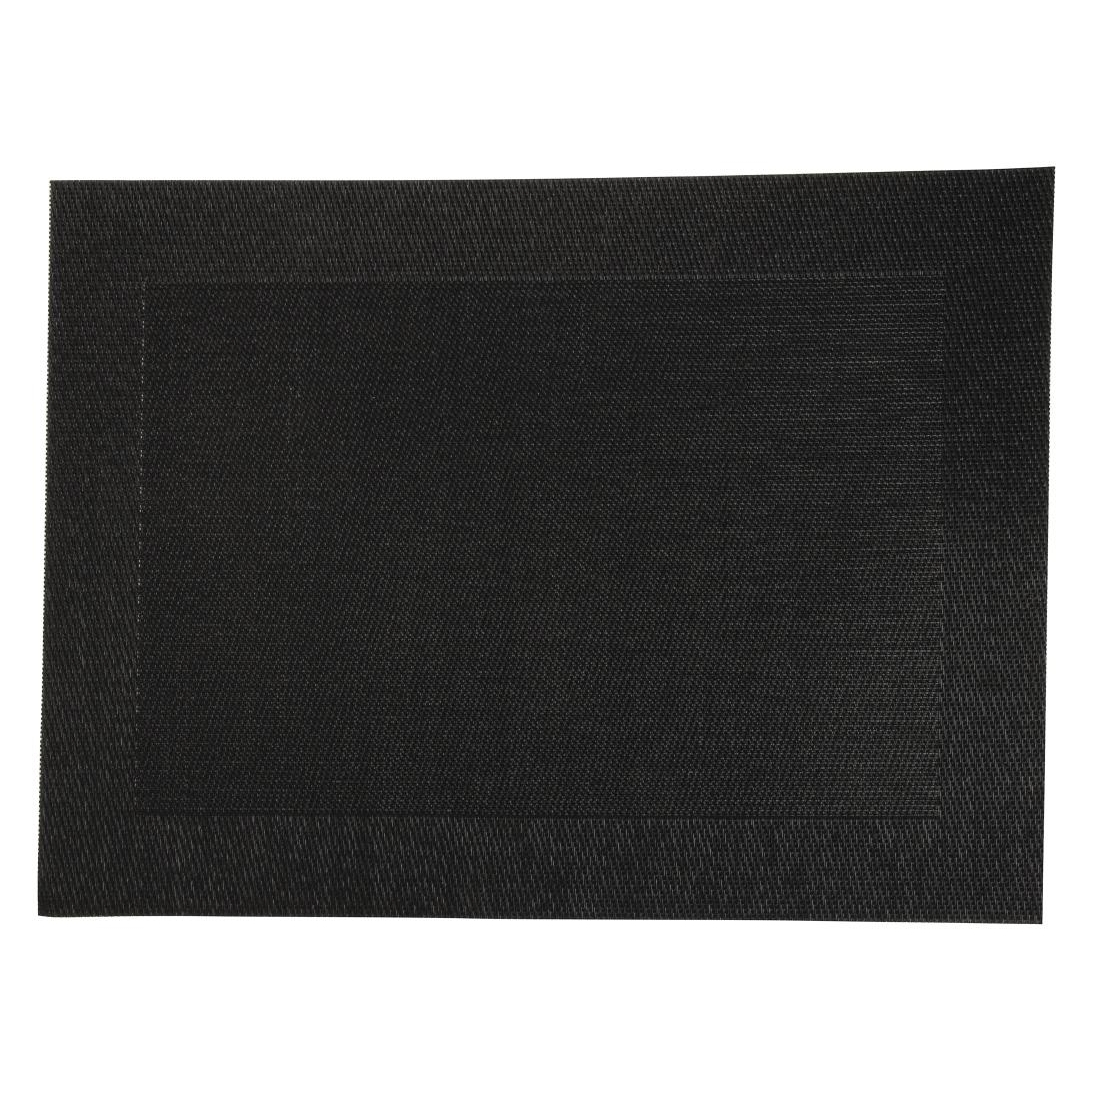 Woven PVC Black Table Mat